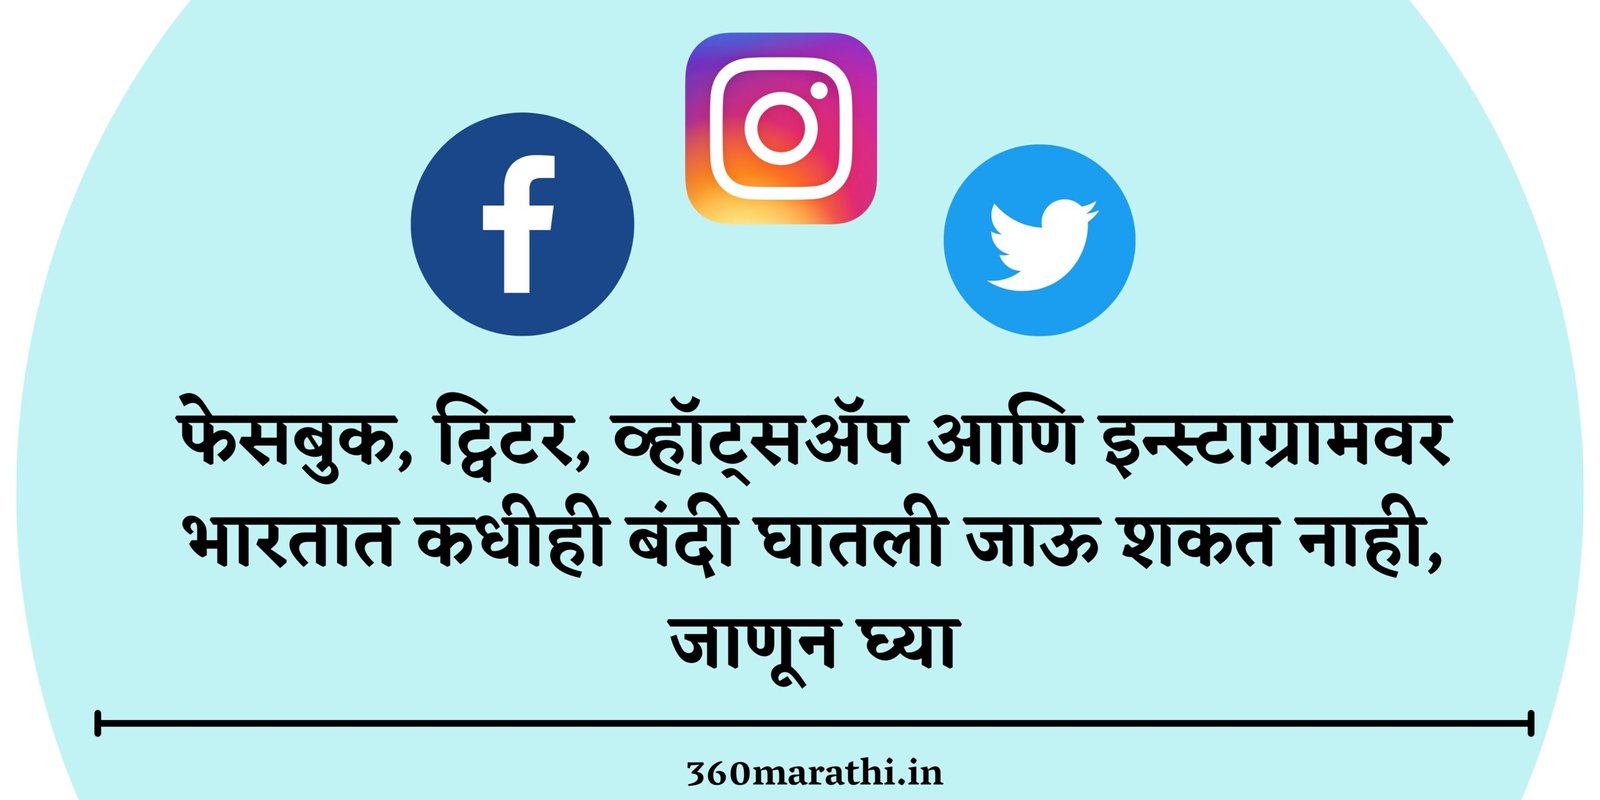 फेसबुक, ट्विटर, व्हॉट्सअ‍ॅप आणि इन्स्टाग्रामवर भारतात कधीही बंदी घातली जाऊ शकत नाही, जाणून घ्या | Facebook, Twitter, WhatsApp and Instagram can never get banned in India